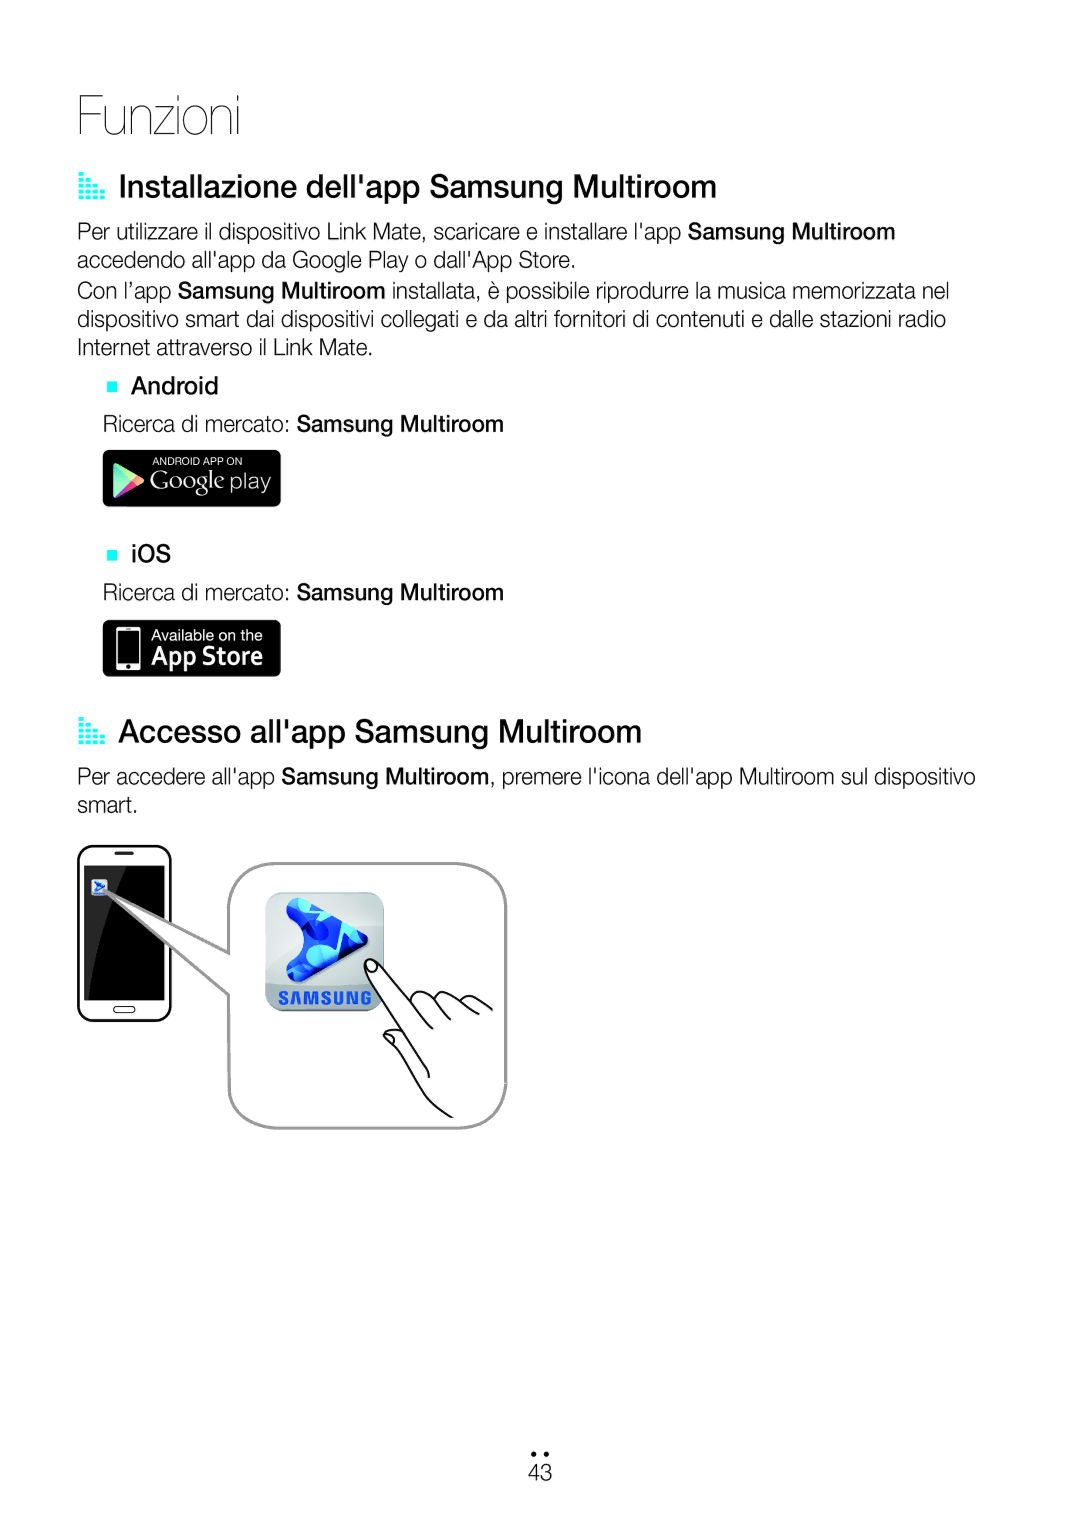 Samsung WAM270/ZF manual AA Installazione dellapp Samsung Multiroom, AA Accesso allapp Samsung Multiroom, `` Android 